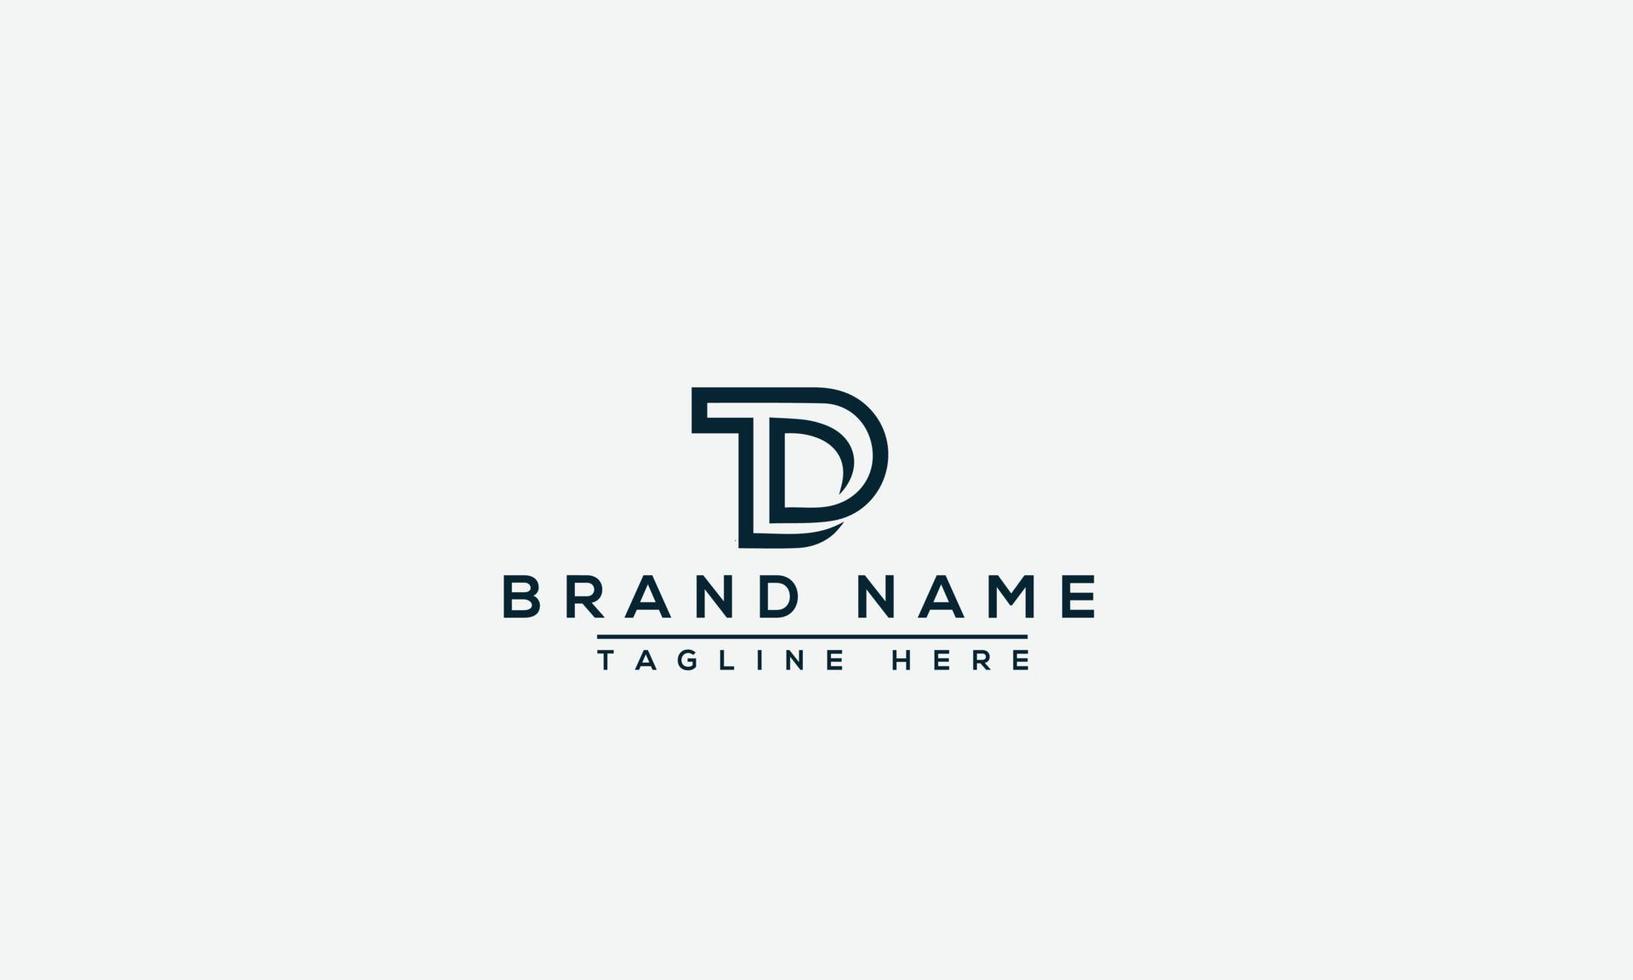 elemento de marca gráfico vectorial de plantilla de diseño de logotipo td. vector